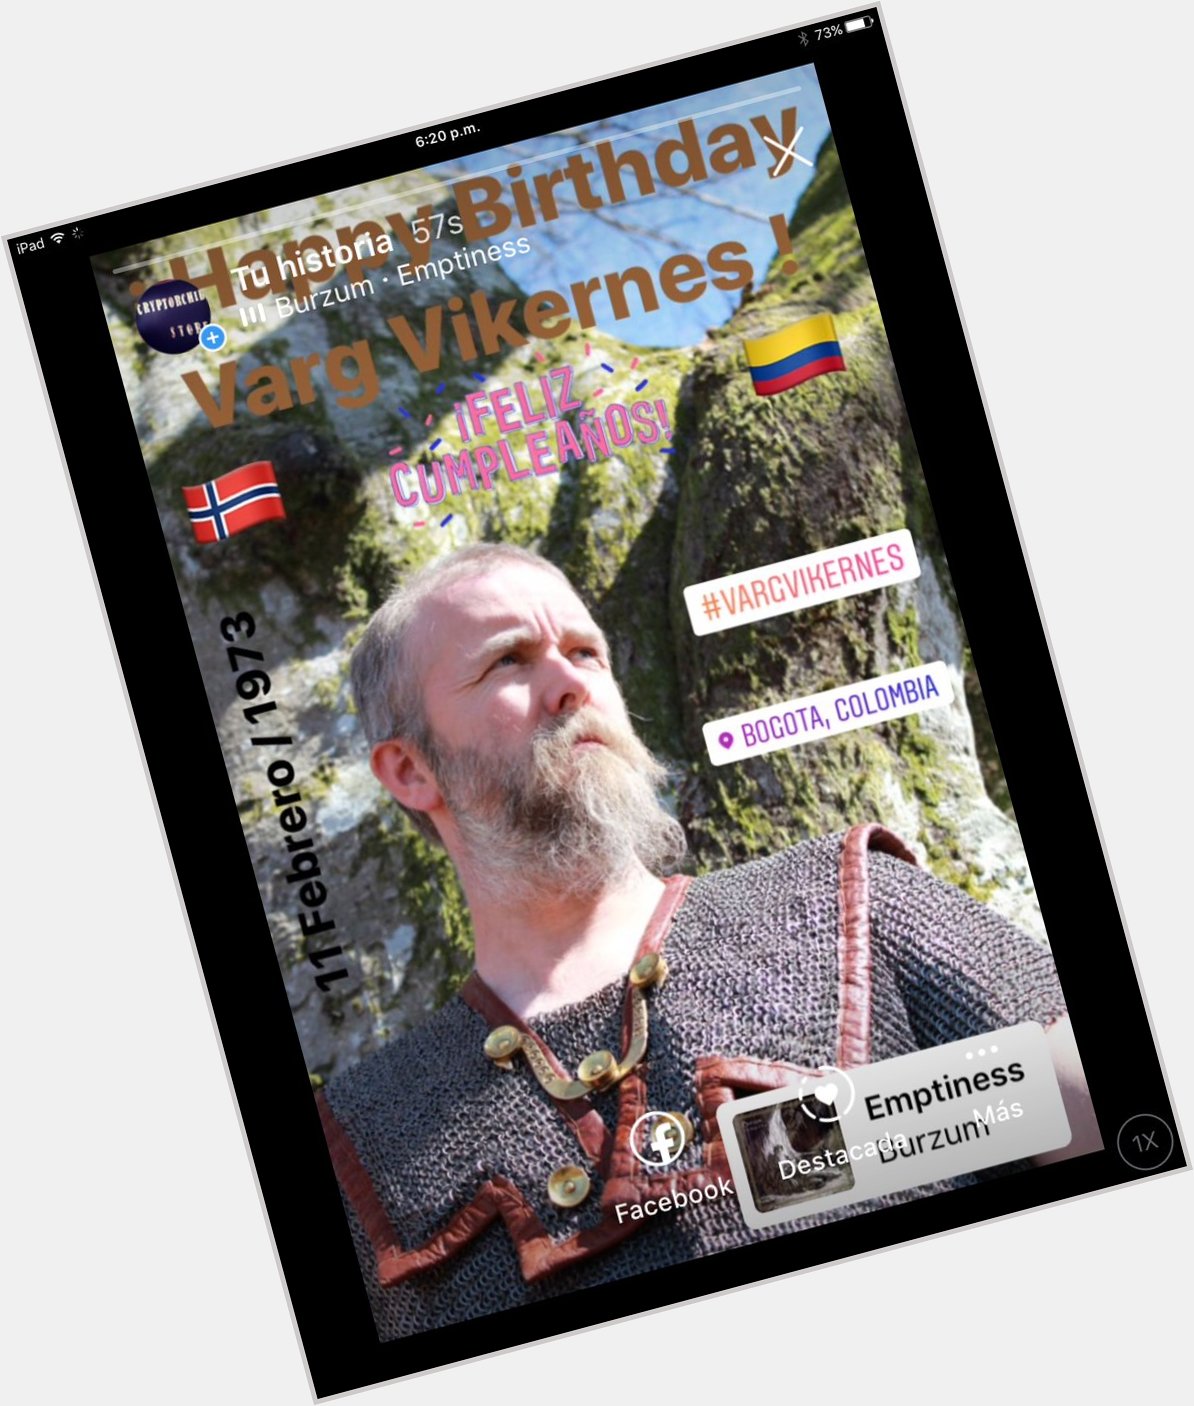  ¡ Happy Birthday 2020 Varg Vikernes ! | | | | 